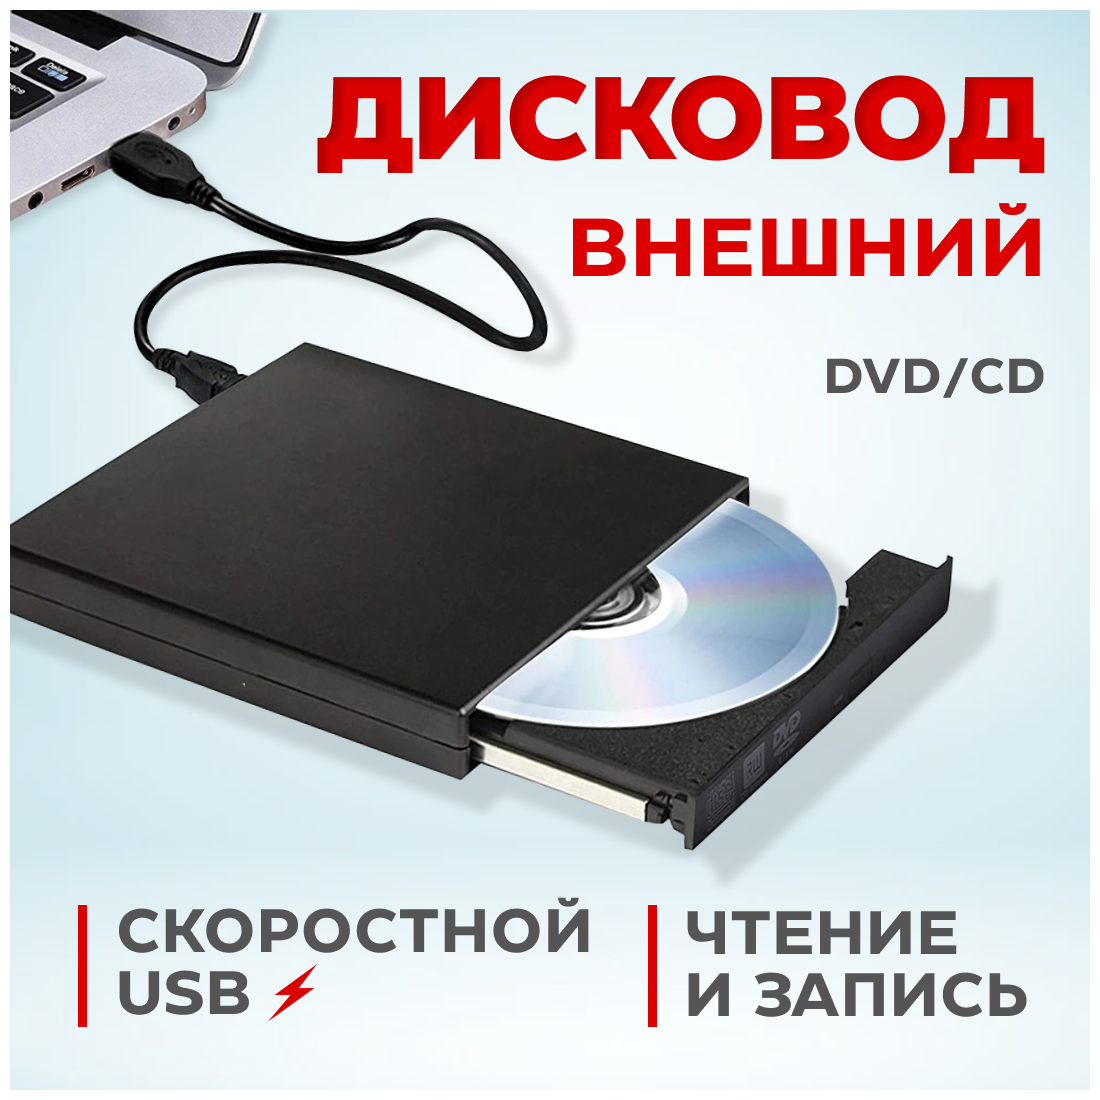 Внешний дисковод CD/DVD - USB 2.0 - черный оптический привод для ноутбука компьютера